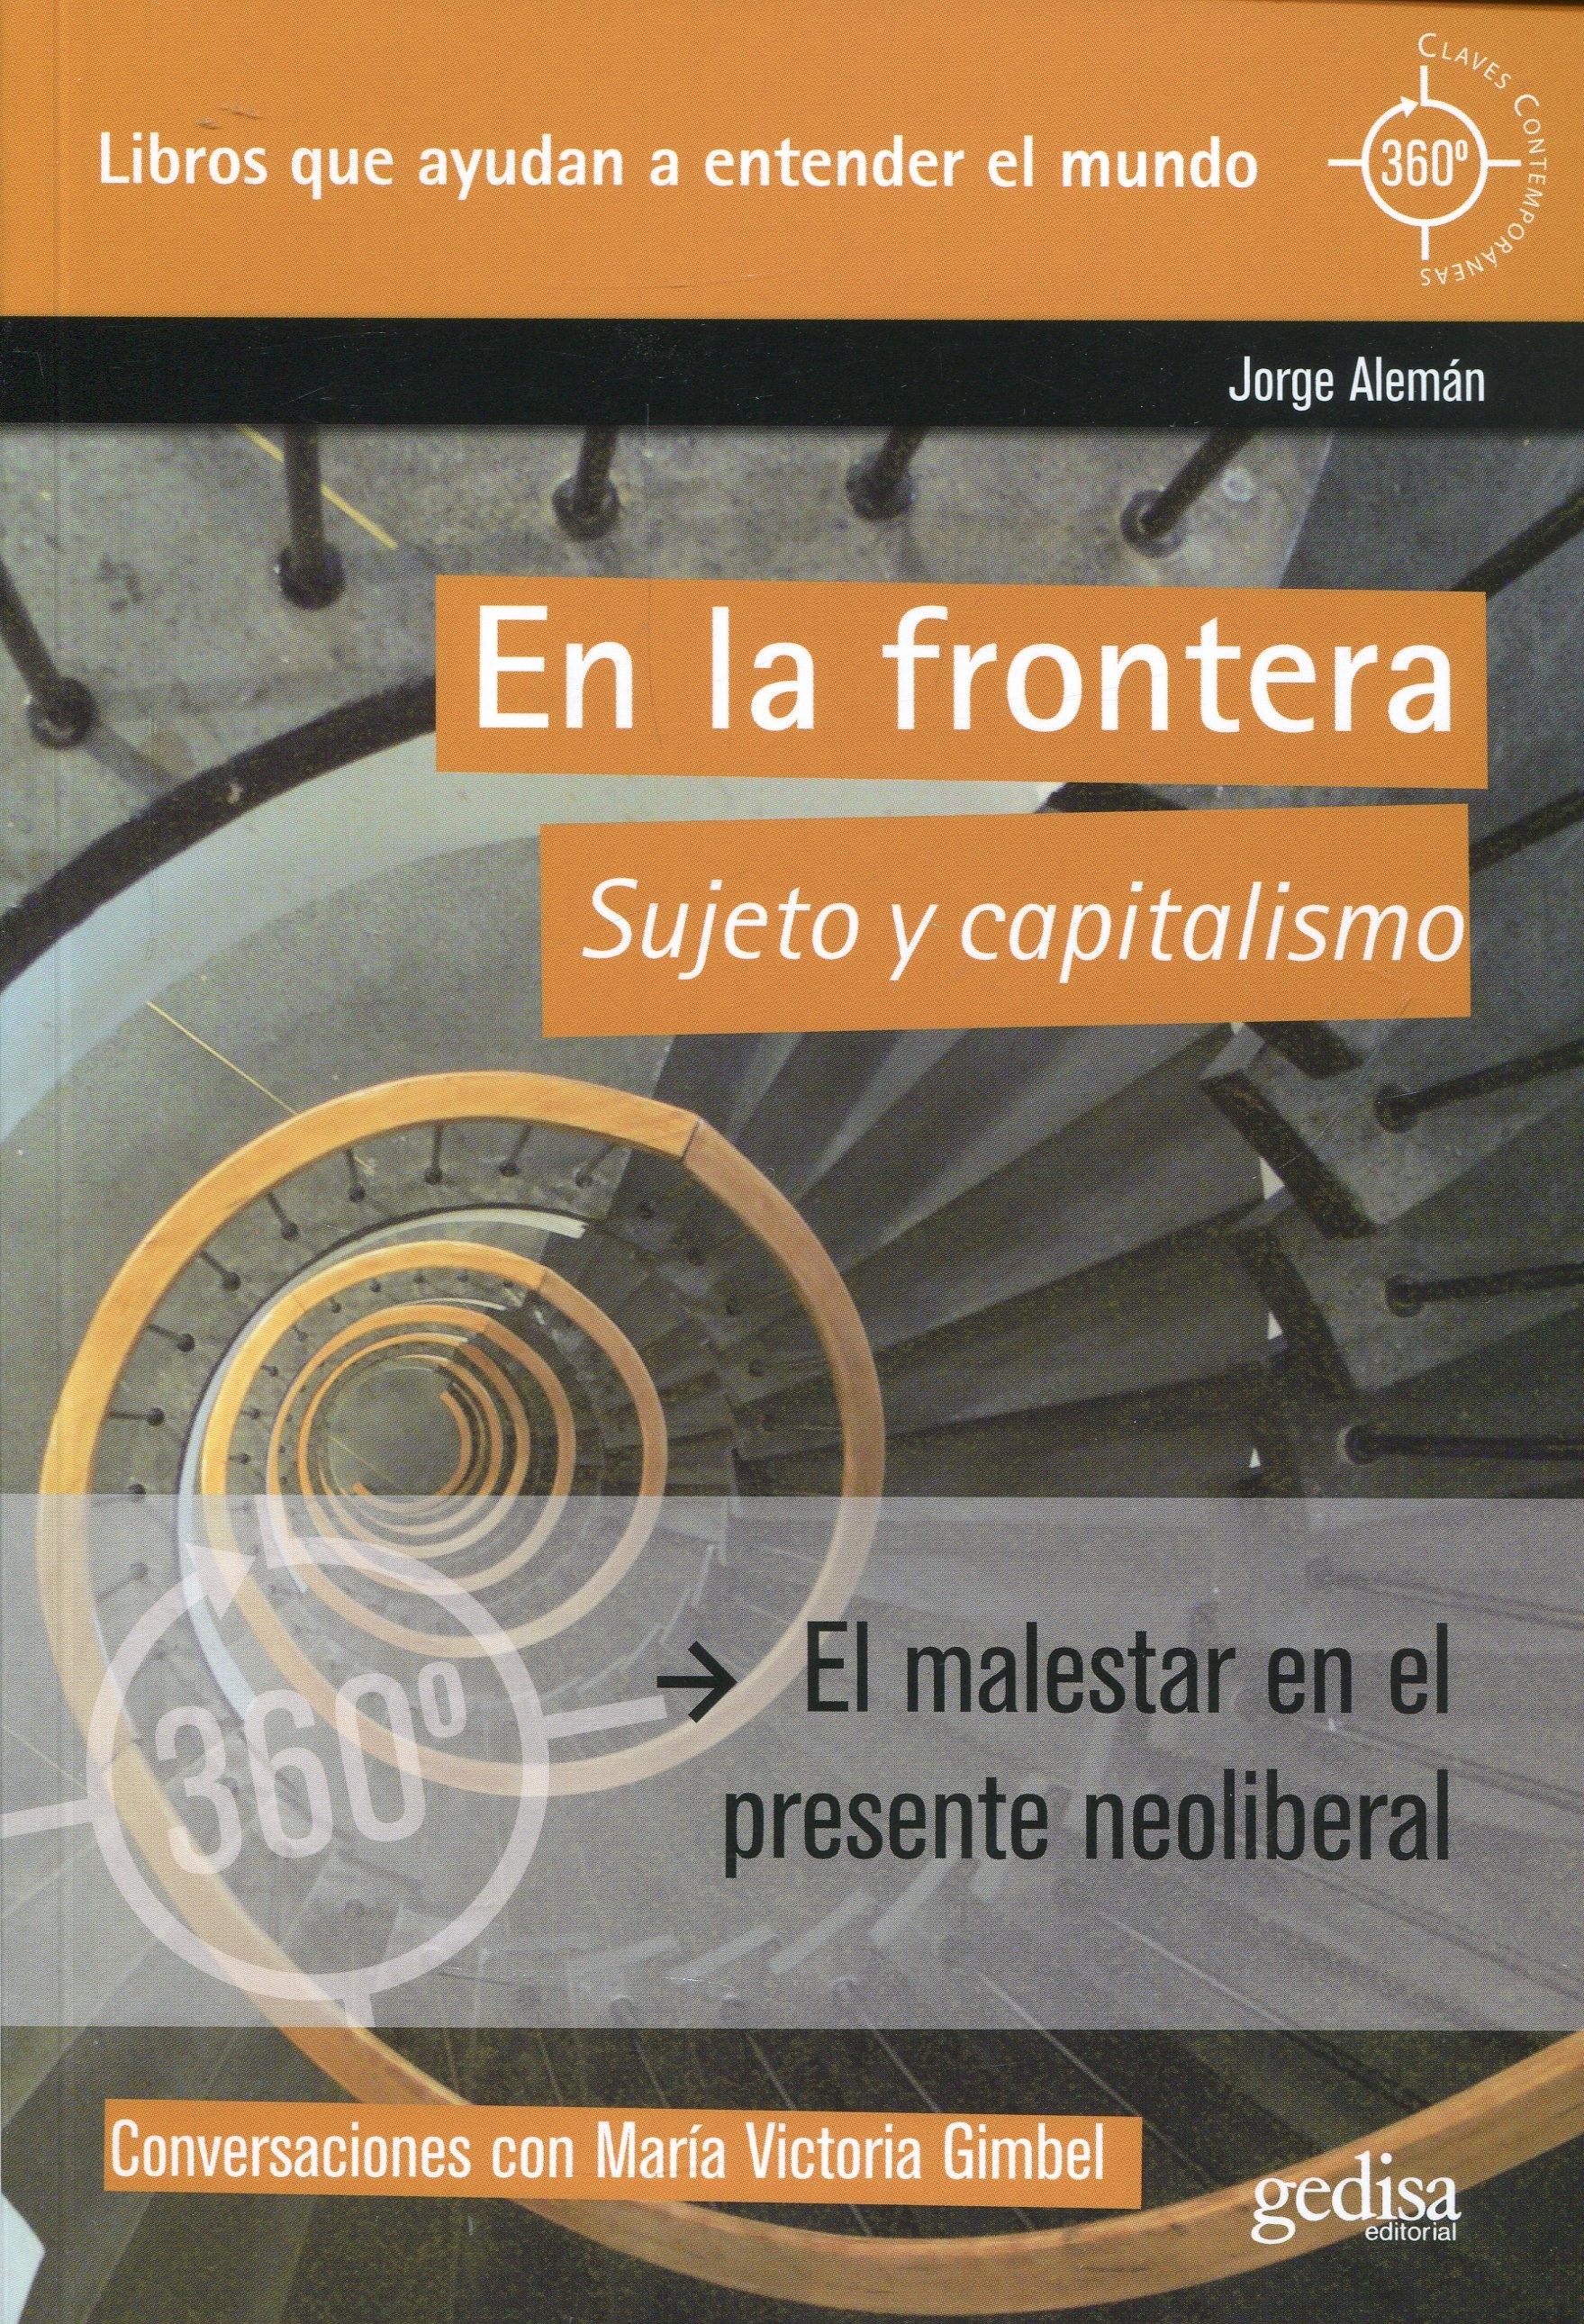 En la frontera "Sujeto y capitalismo"